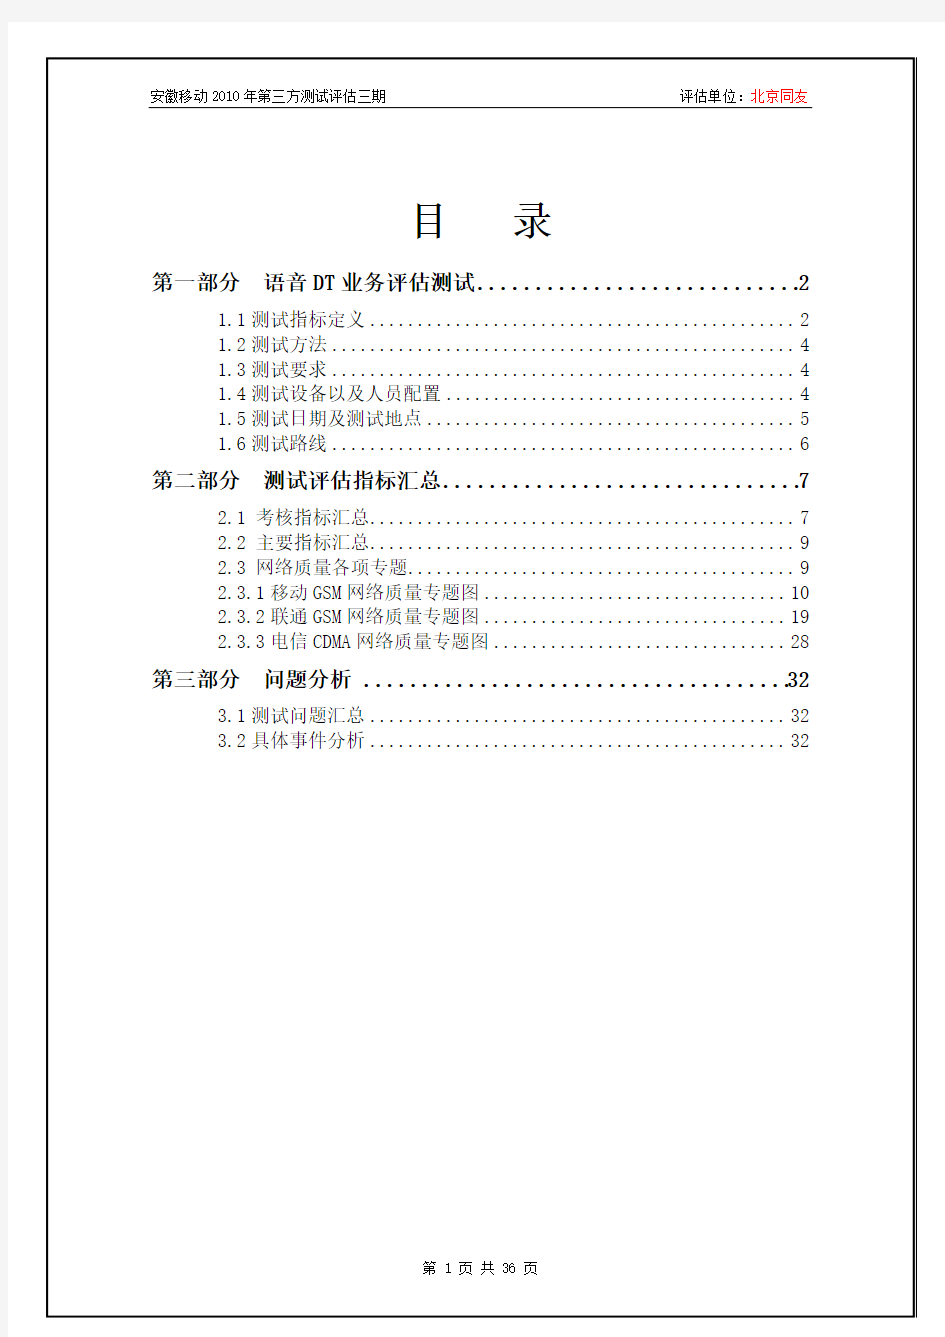 中国移动安徽公司2010年度第三方测试评估报告(亳州市铁路)